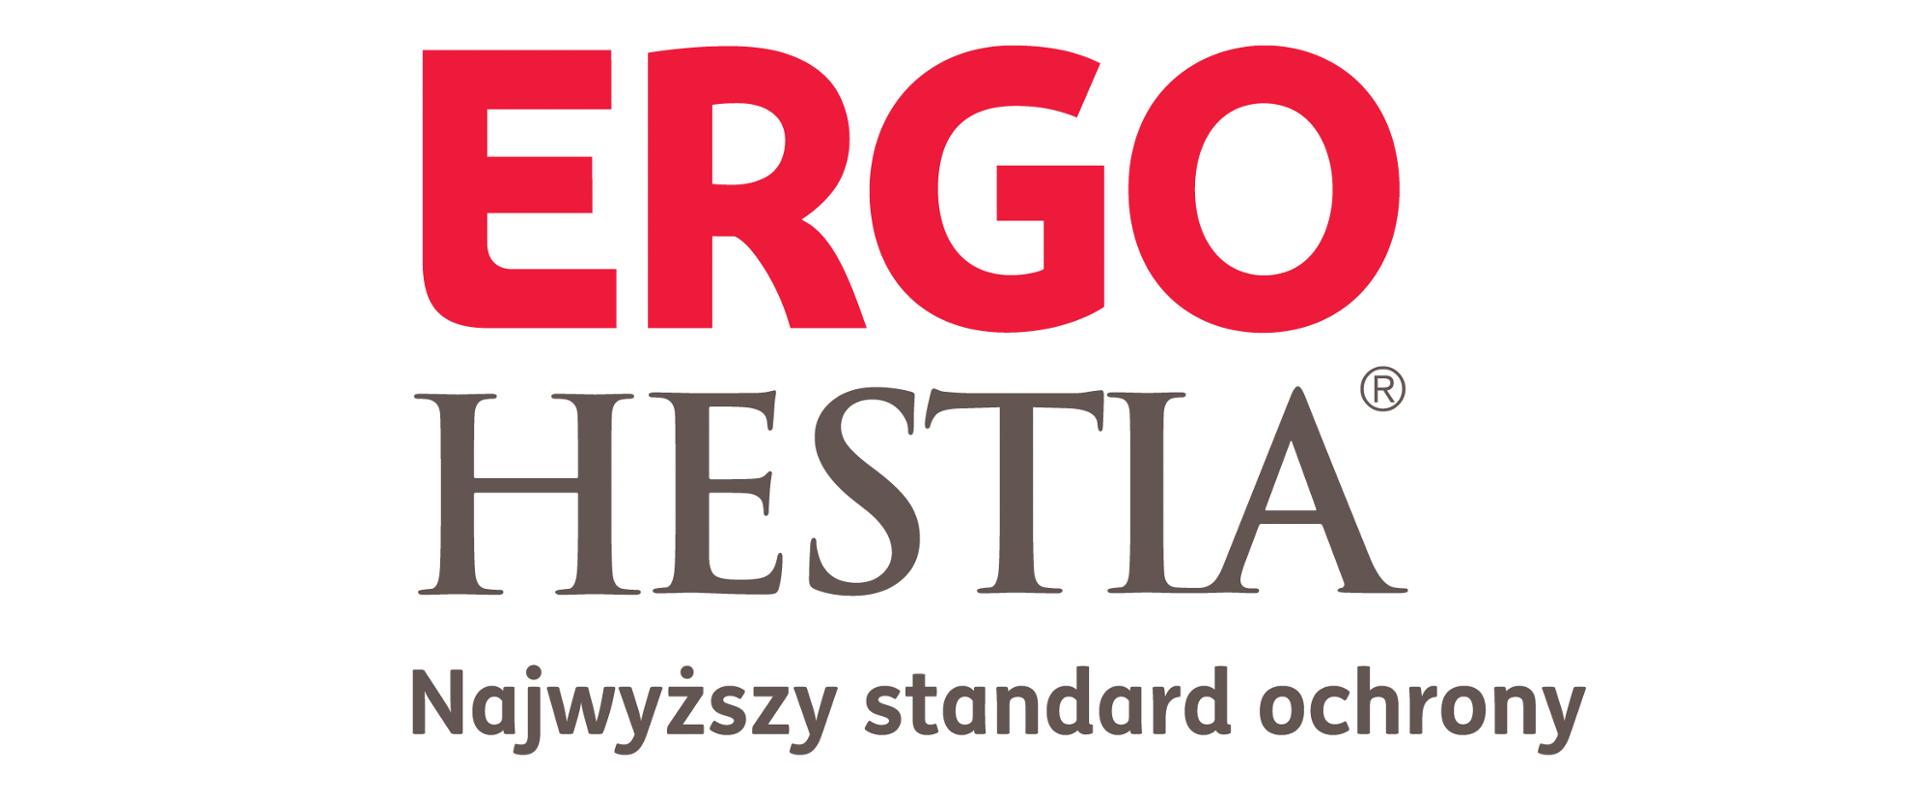 Napis Ergo (czerwone litery) Hestia (szare litery) Najwyższy standard ochrony (szare litery) na białym tle